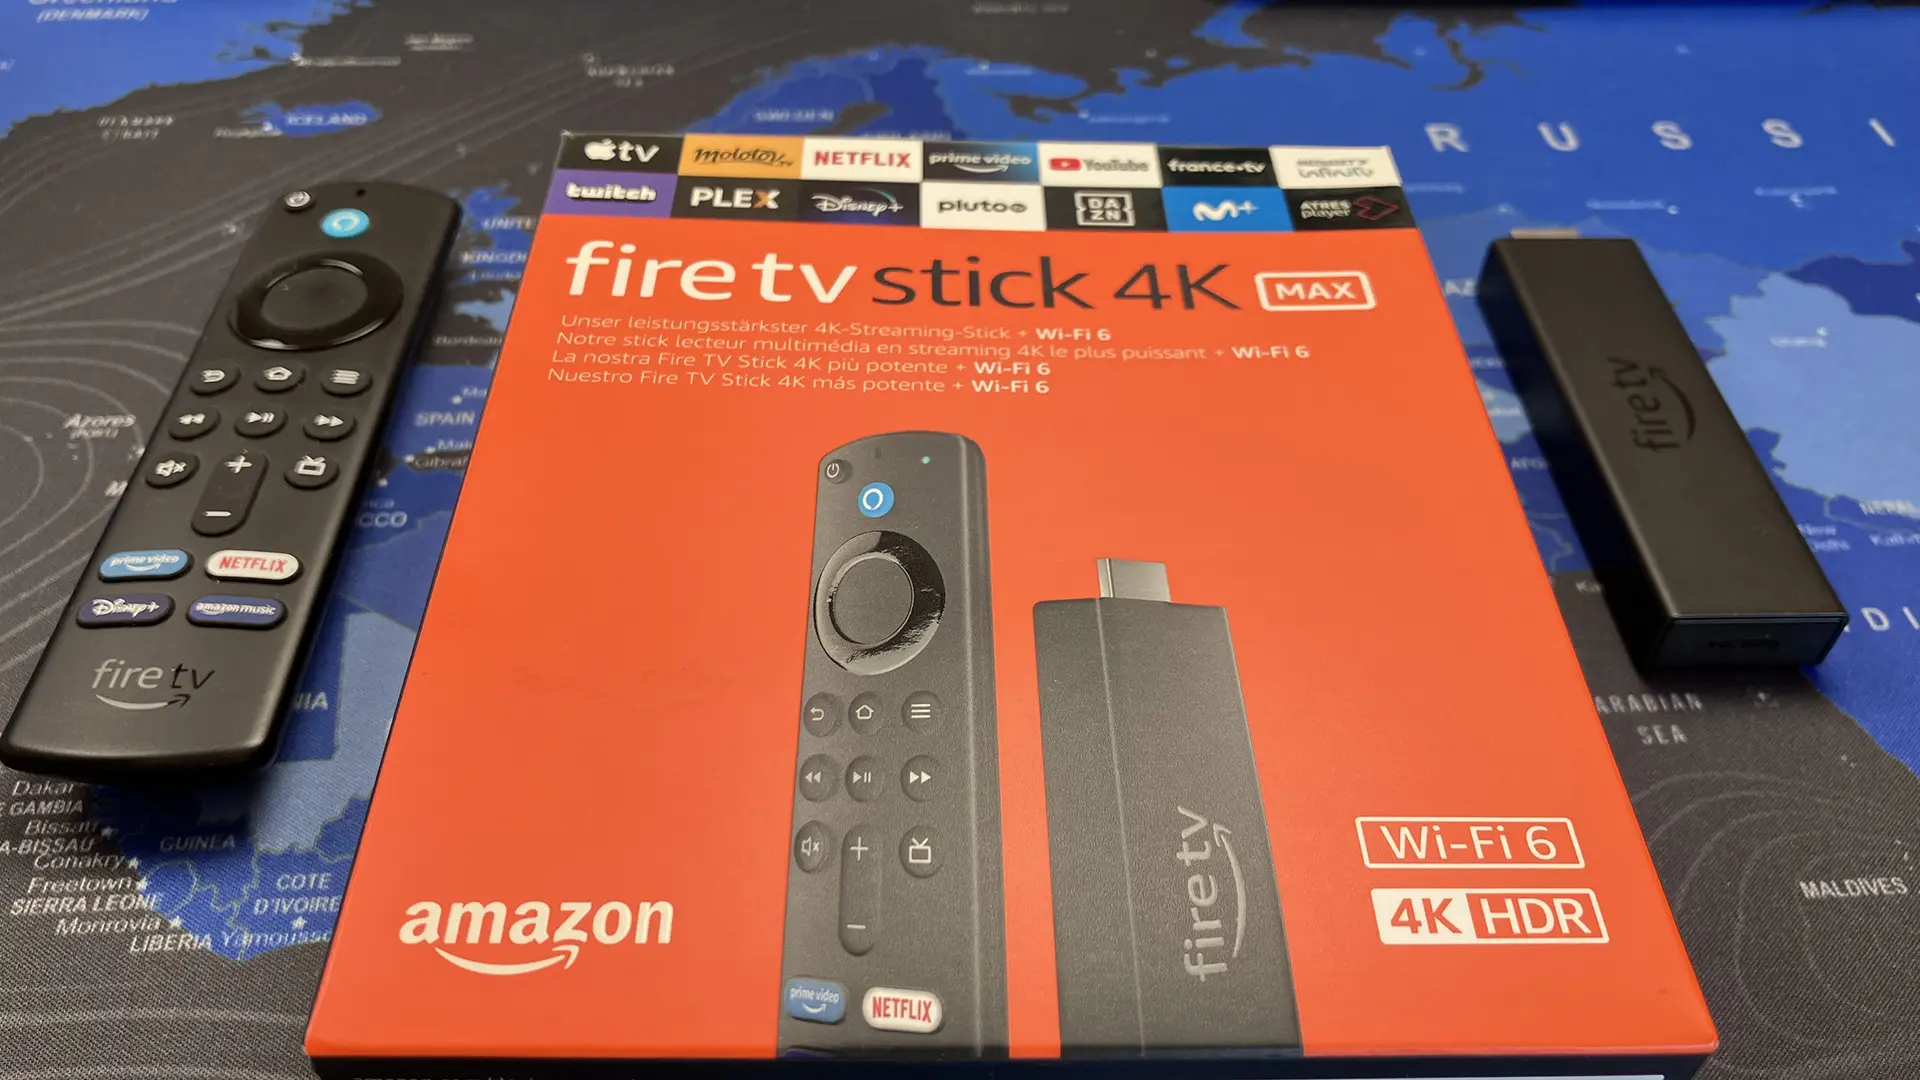 Adaptador Hdmi Fire TV Stick 4K Wifi Con Mando Por Voz Alexa